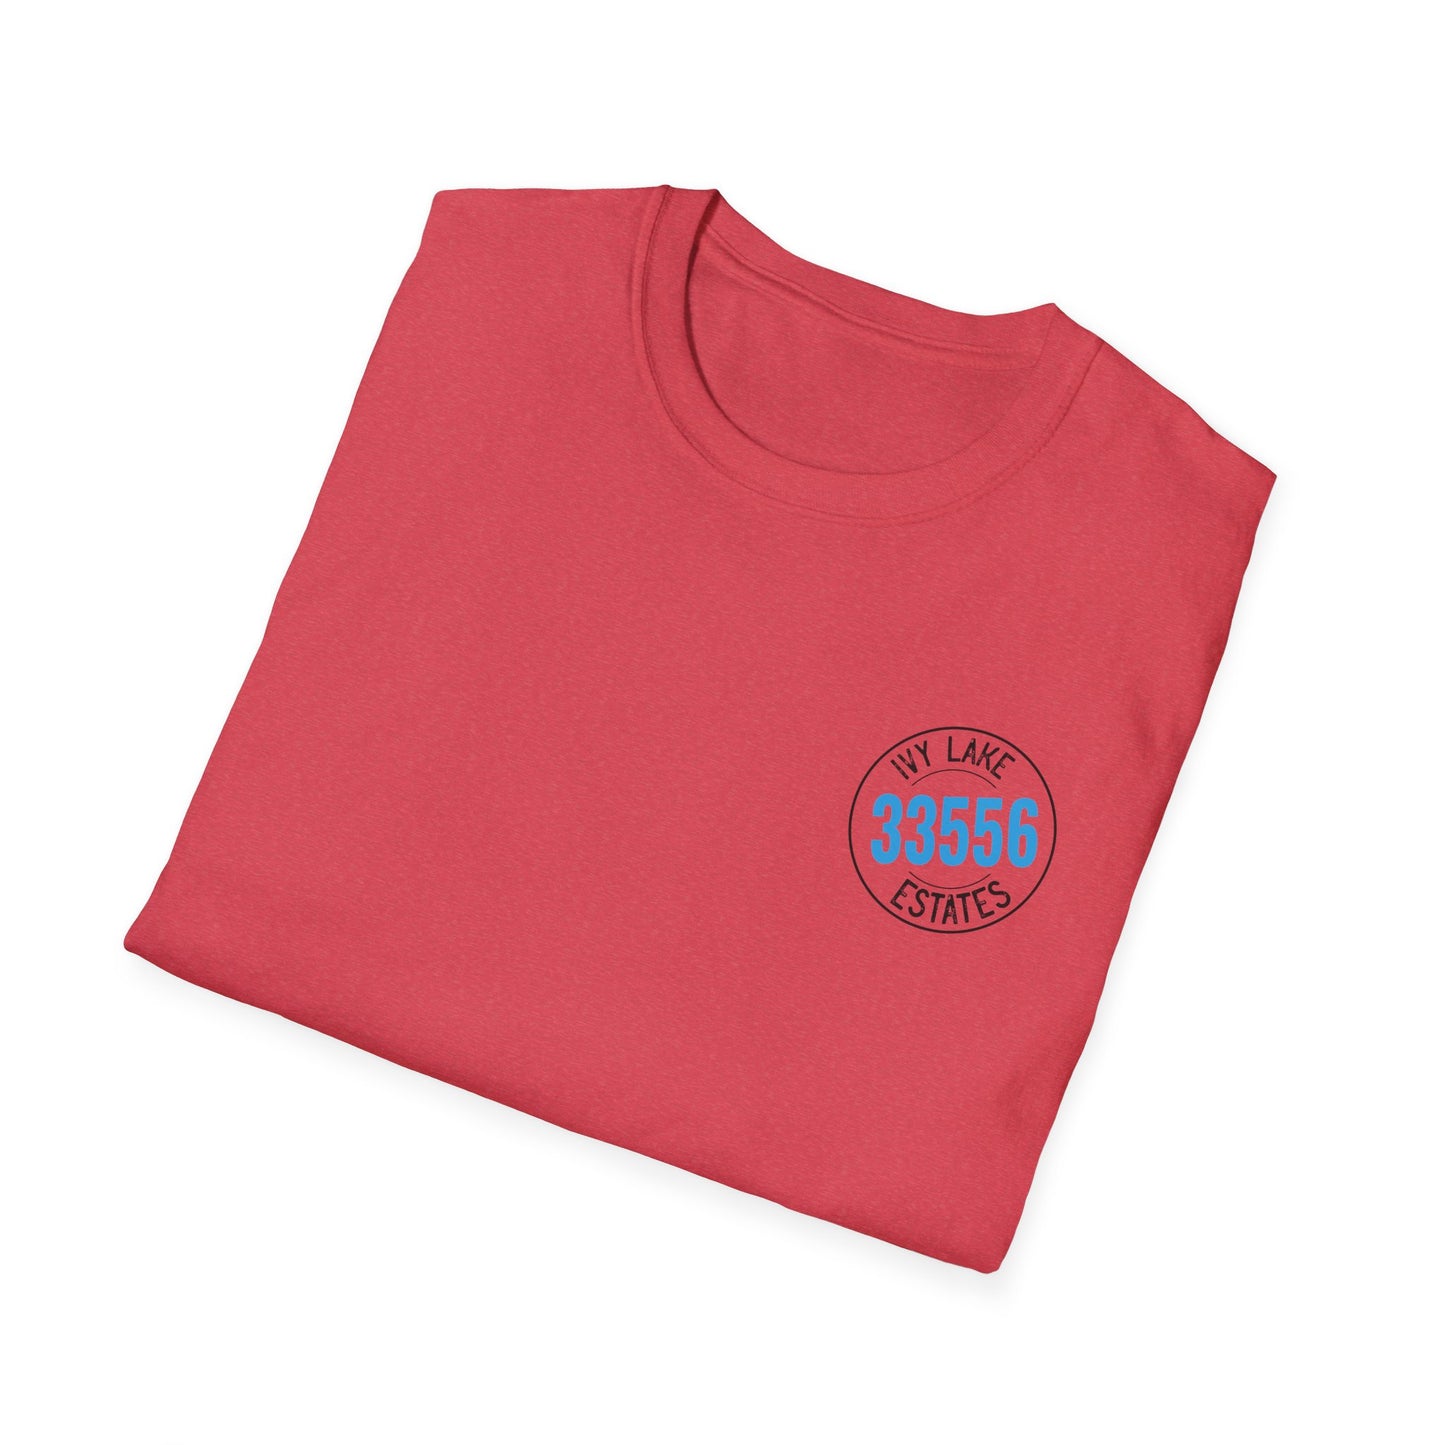 ILE 33556 Ivy Lake Estates Resident Unisex Softstyle T-Shirt